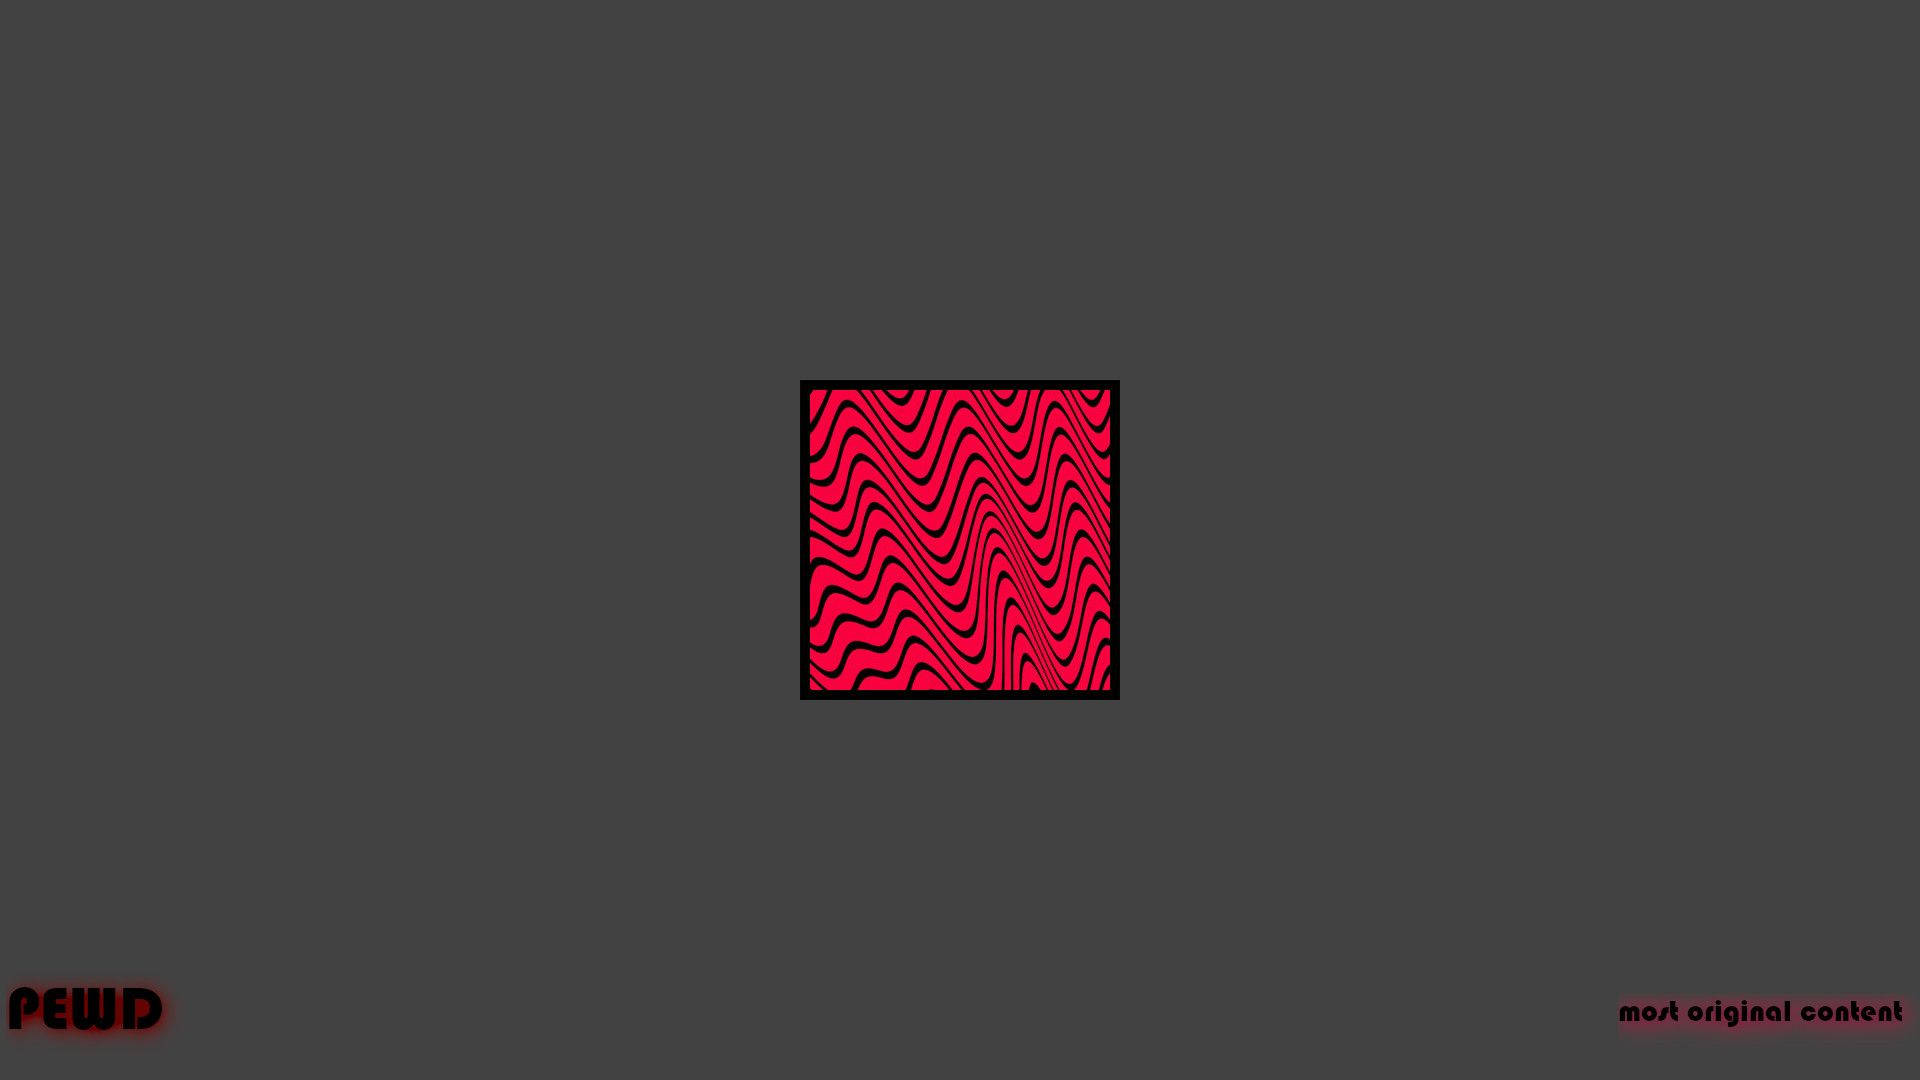 “pewdiepie Minimalist Logo” Background